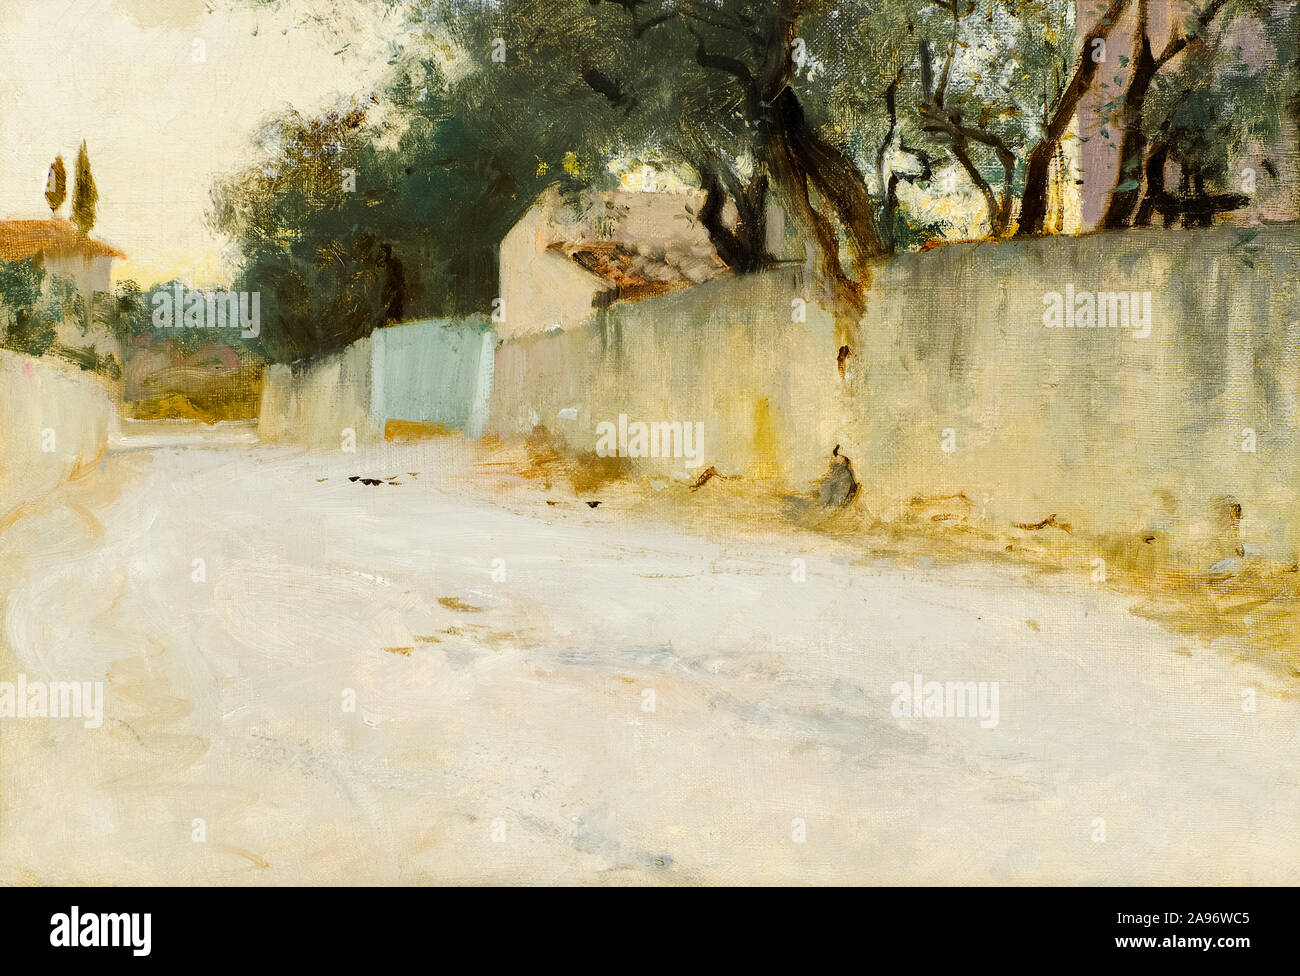 John Singer Sargent, une route dans le sud, la peinture de paysages, 1878-1884 Banque D'Images